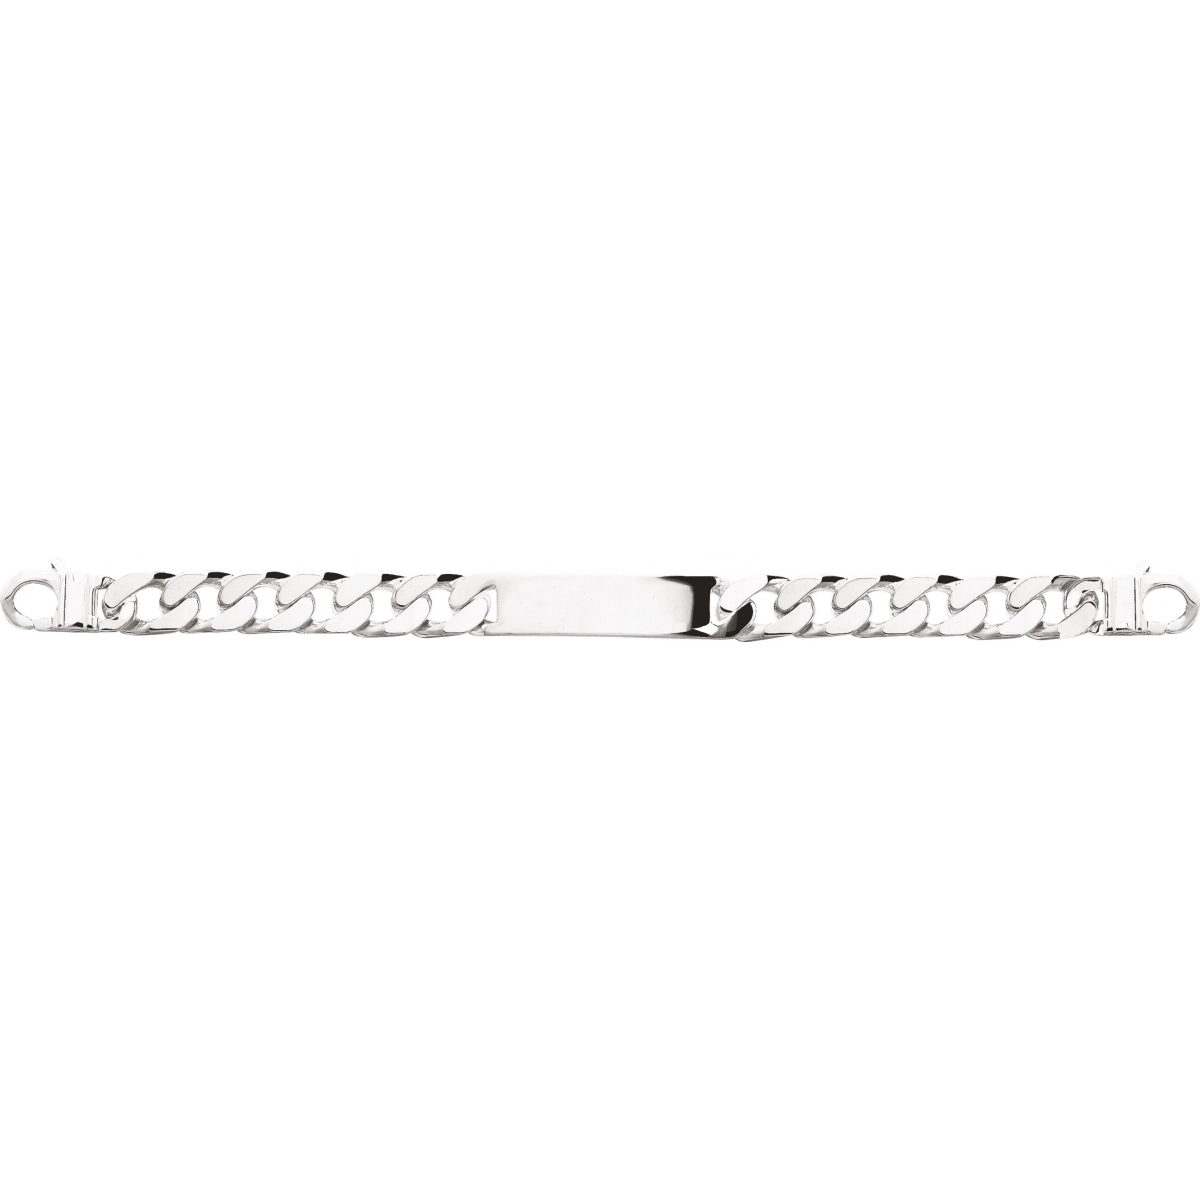 ID bracelet 12mm 925 Silver Lua Blanca  327426.89 - Size 22